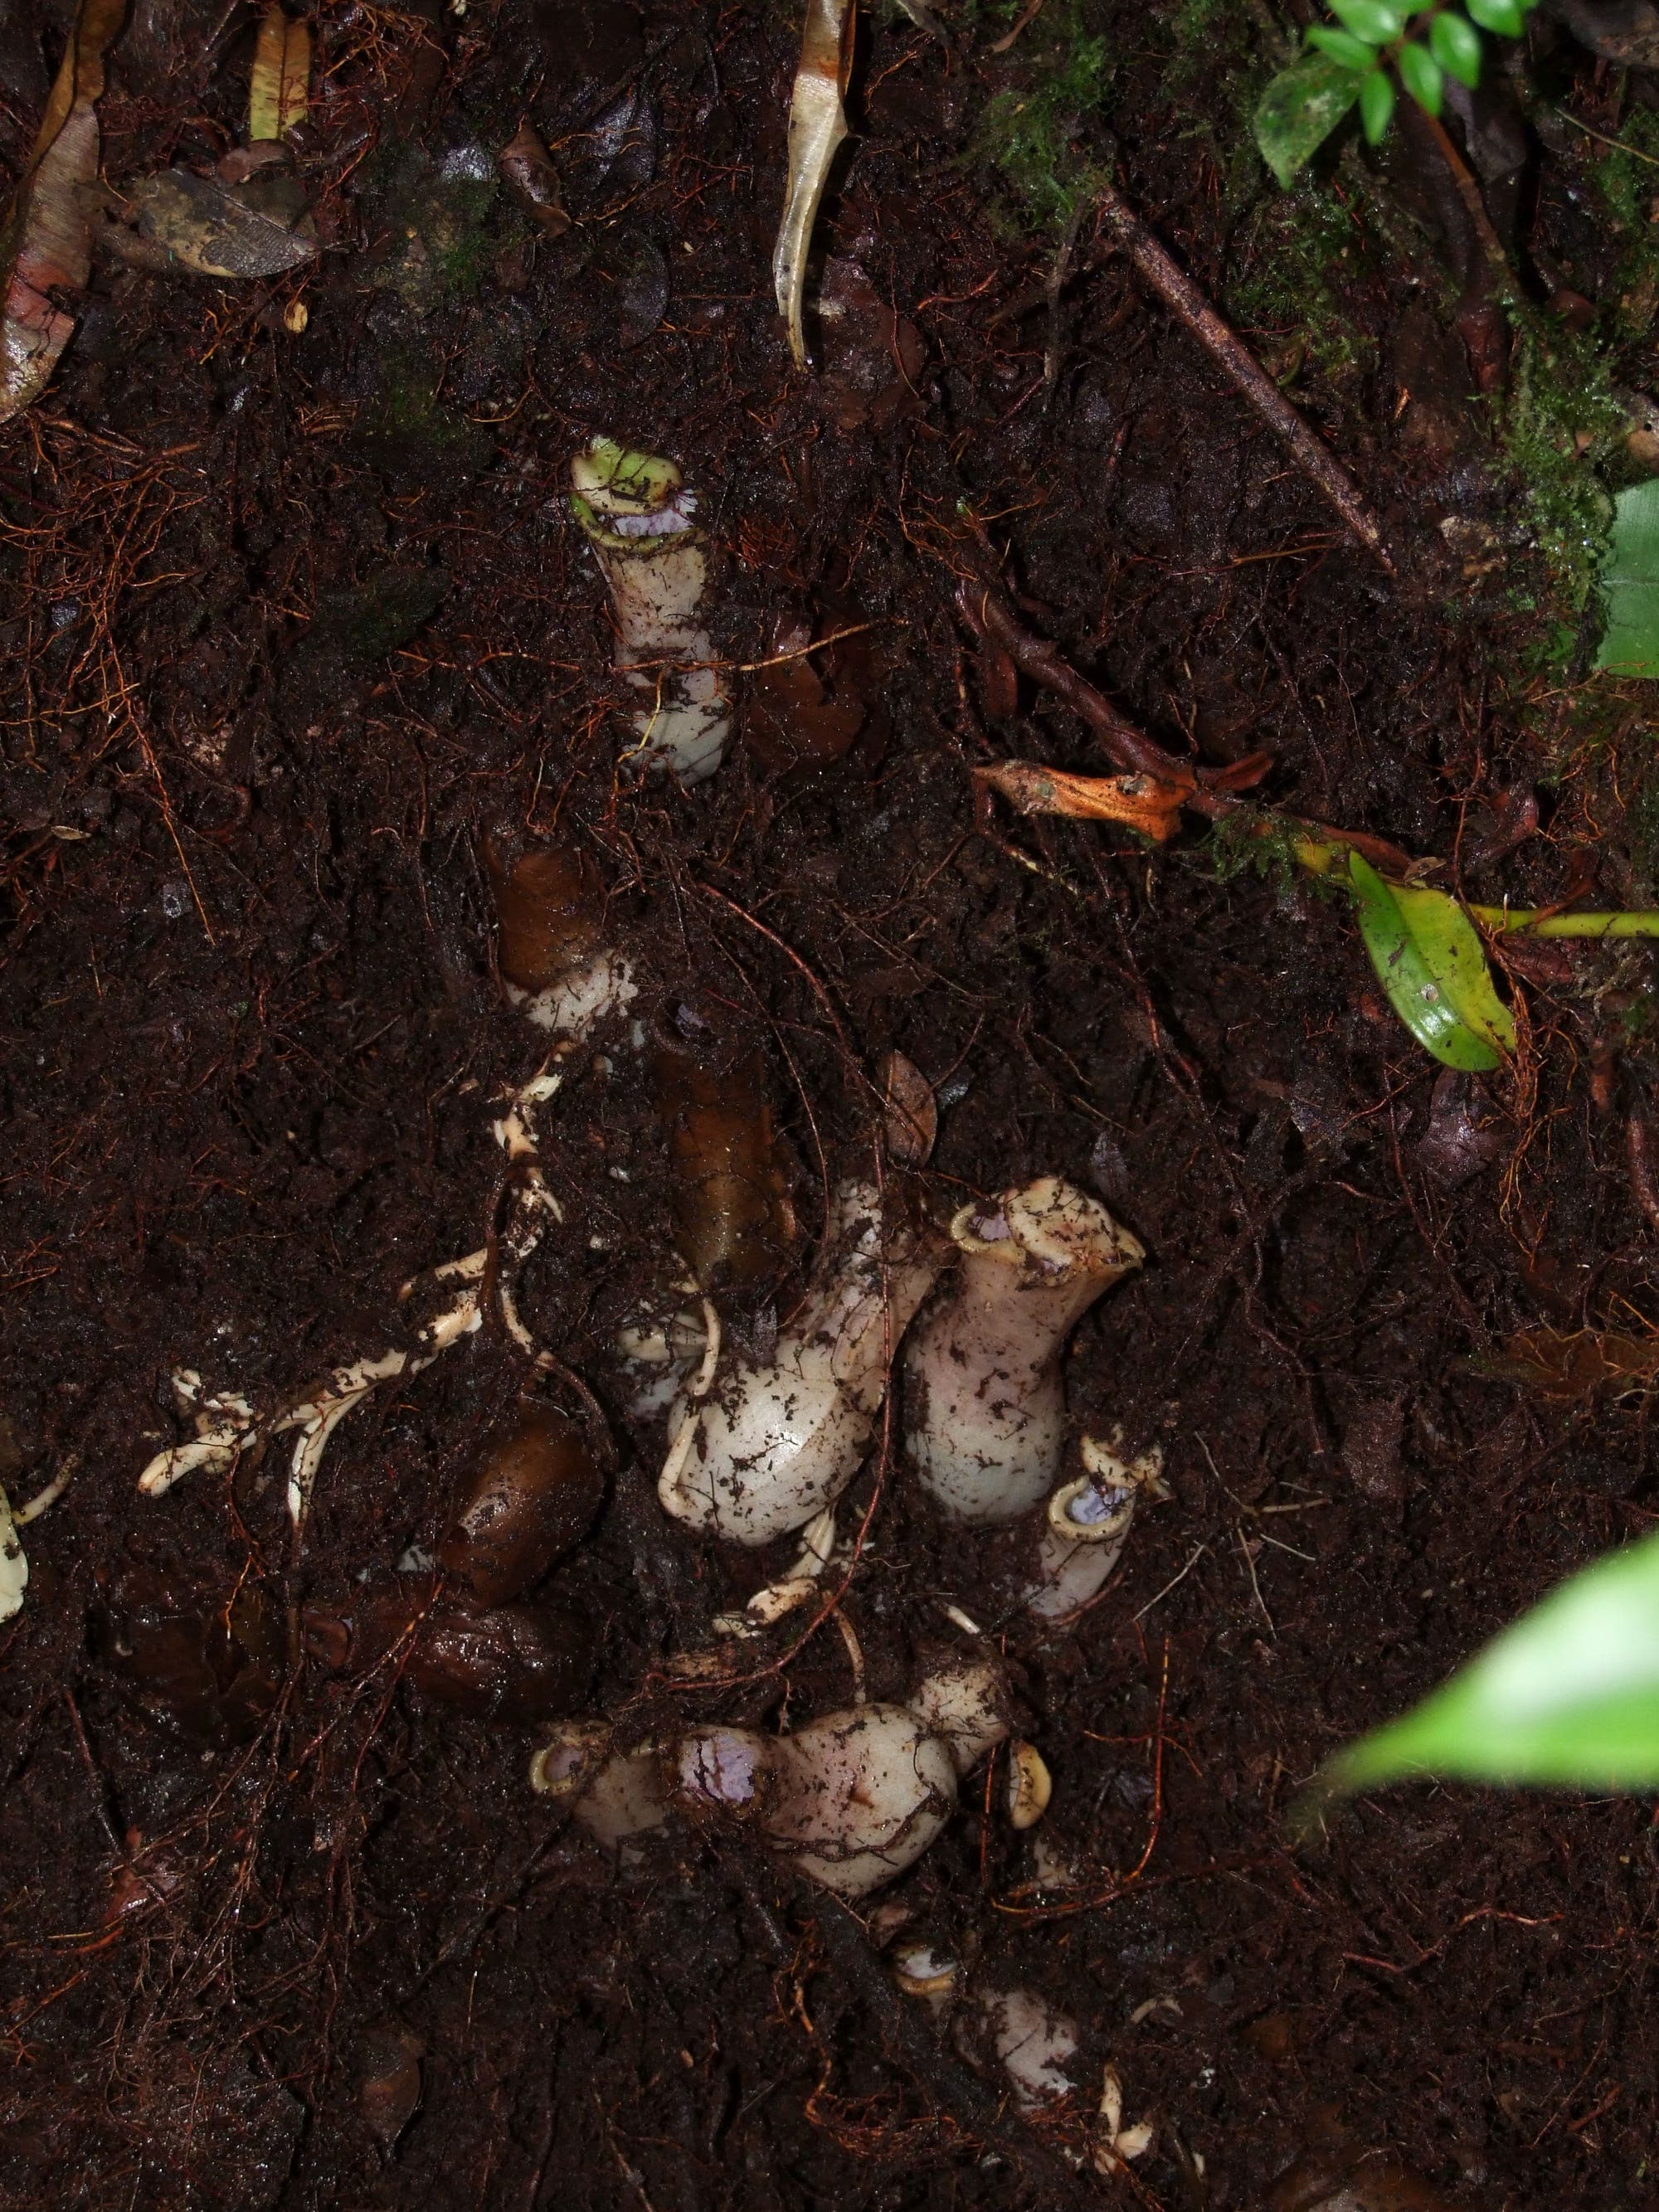 Wenn kein Hohlraum vorhanden ist, wachsen die Triebe direkt in den Boden wie hier, wo ein Bündel von Kannen aus dem Boden ausgegraben wurde.